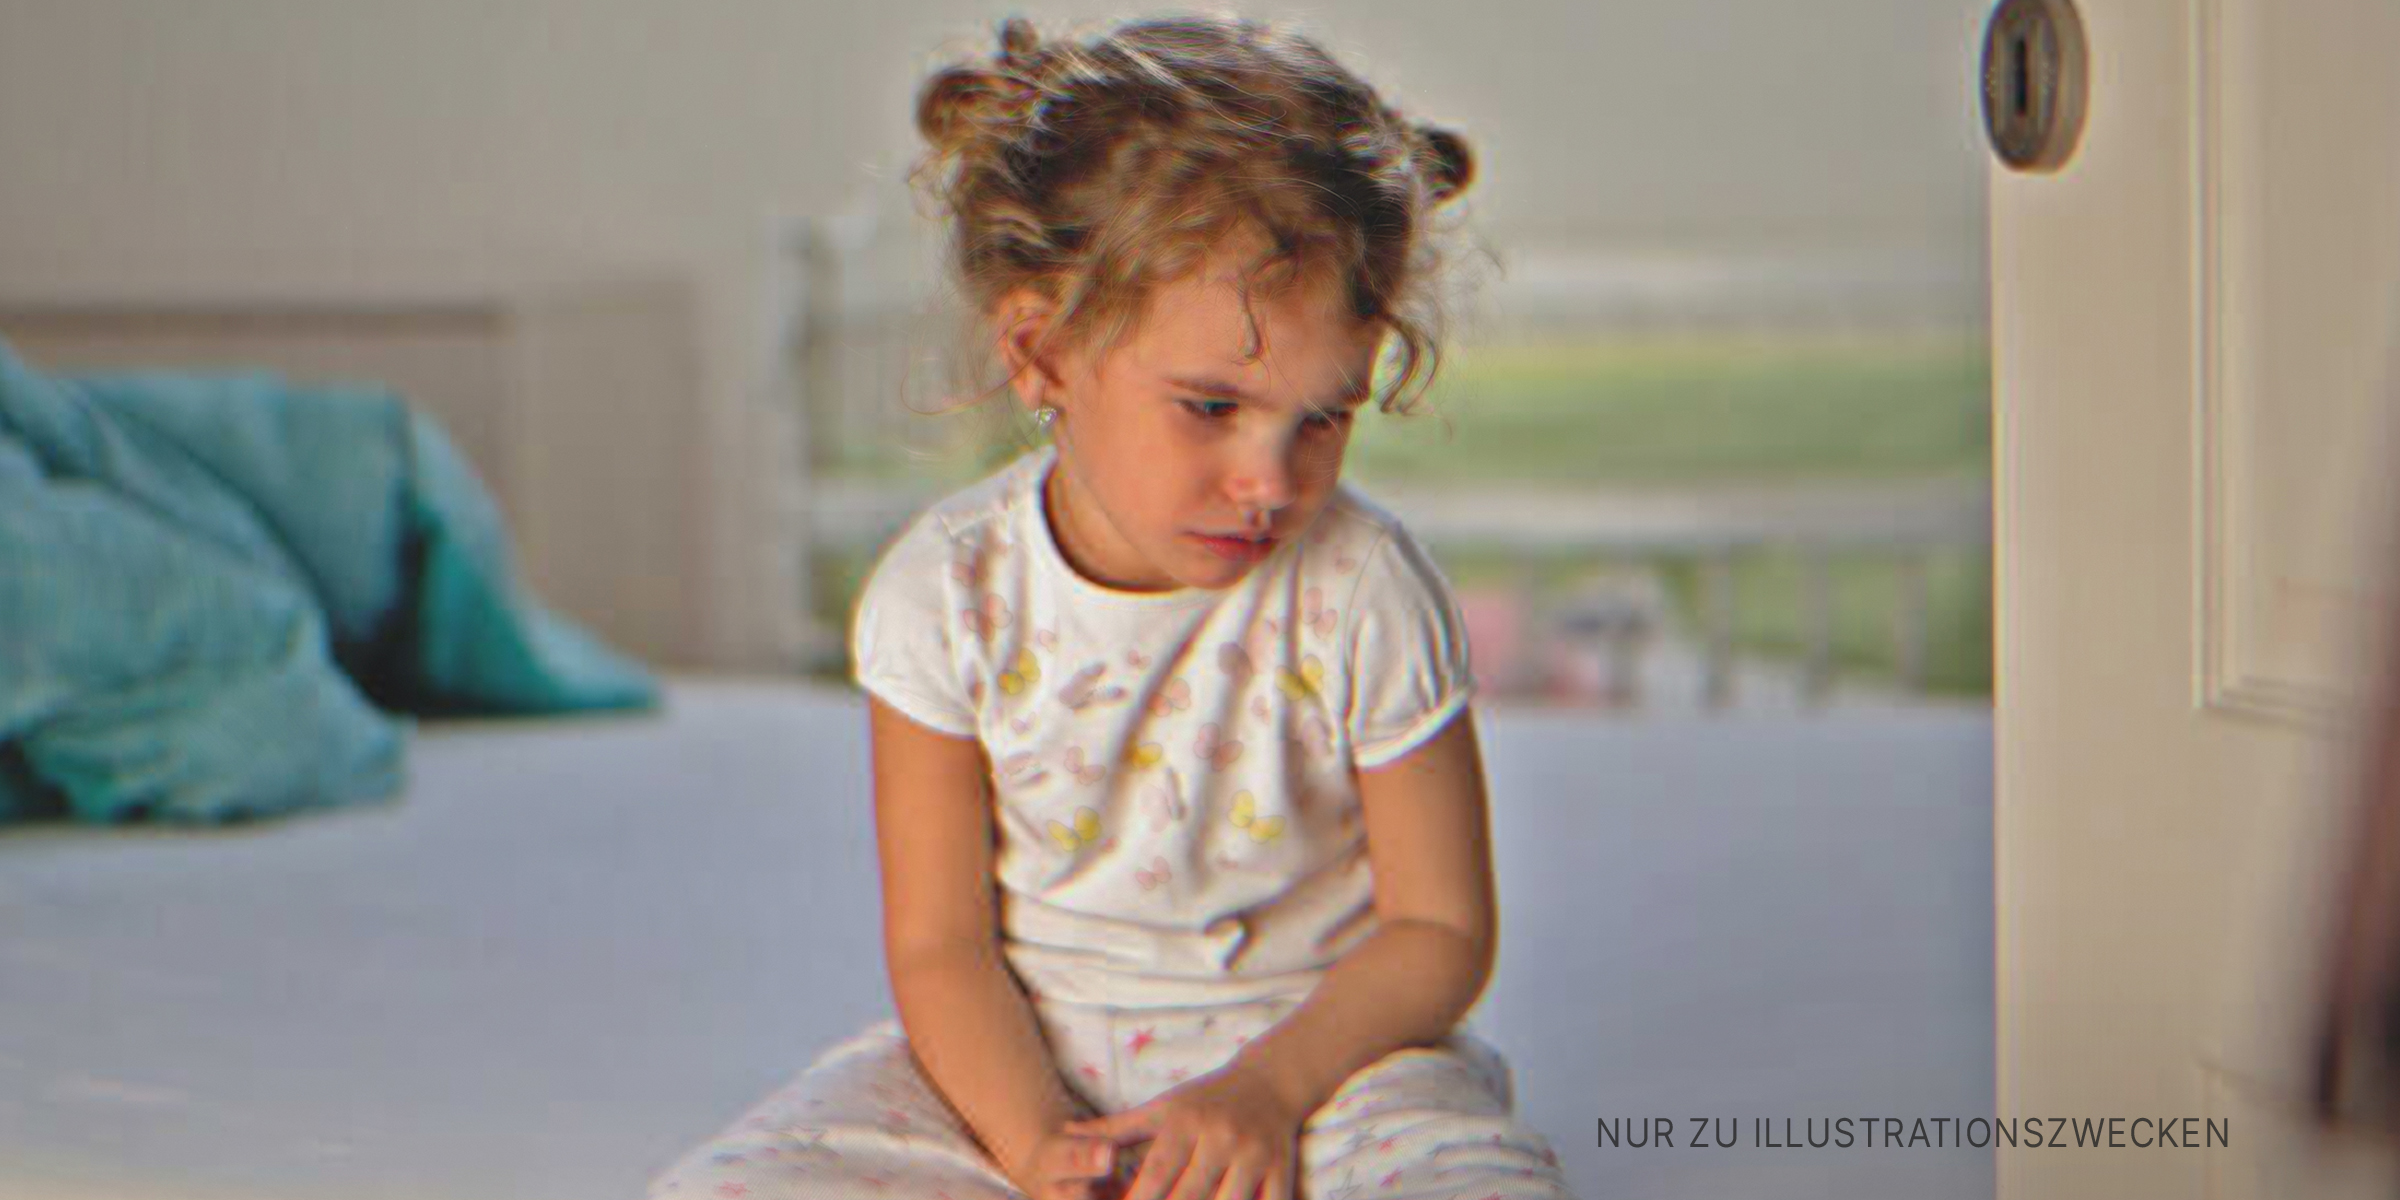 Ein trauriges Mädchen | Quelle: Getty Images